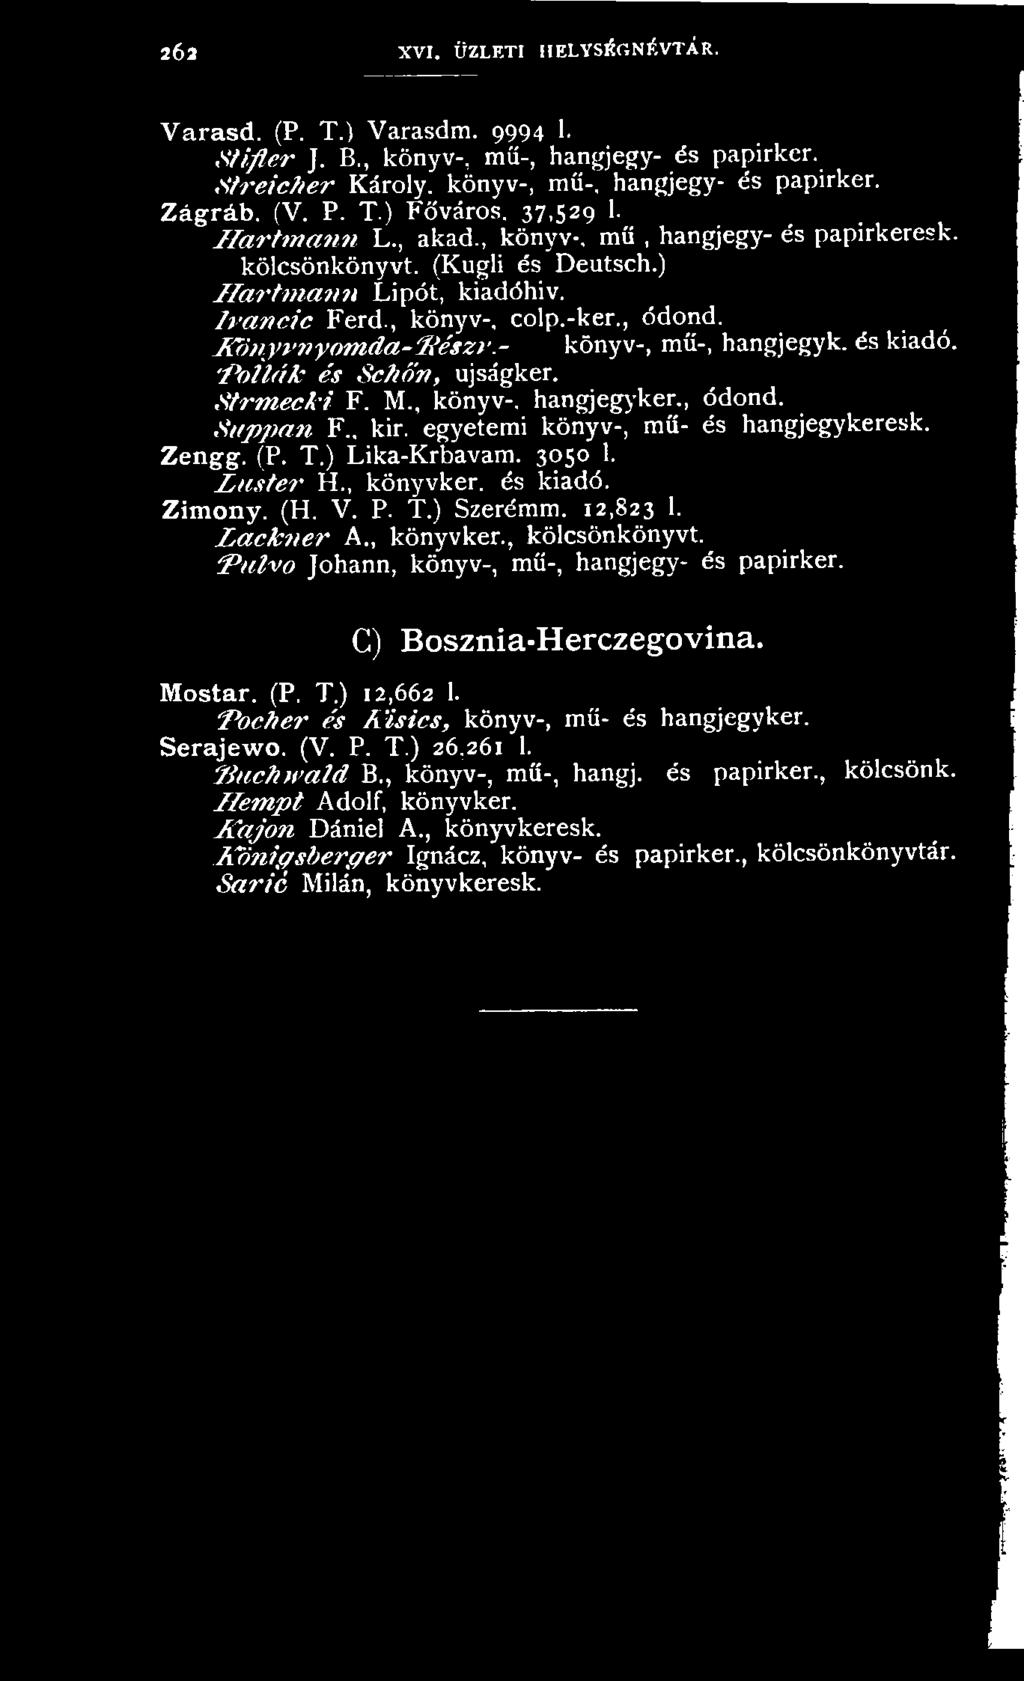 Pulvo Johann, könyv-, mű-, hangjegy- és papirker. C) Bosznia-Herczegovina. Mostar. (P. T.) 12,662 1. Pocher és I l Í s í c s, könyv-, mű- és hangjegyker. Serajewo. (V. P. T.) 26,261 1.